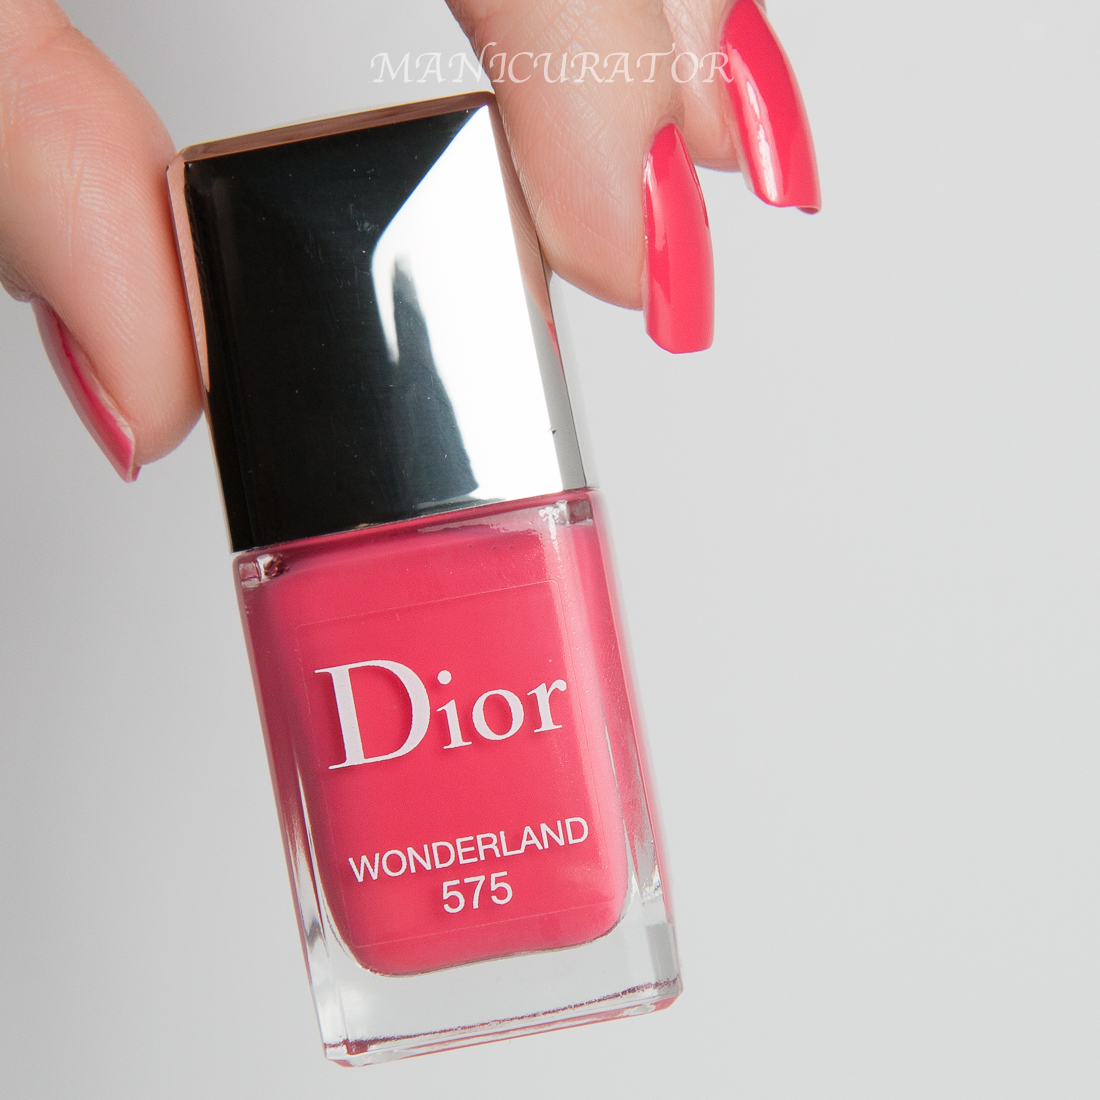 Dior-Gel-Wonderland-575-Swatch